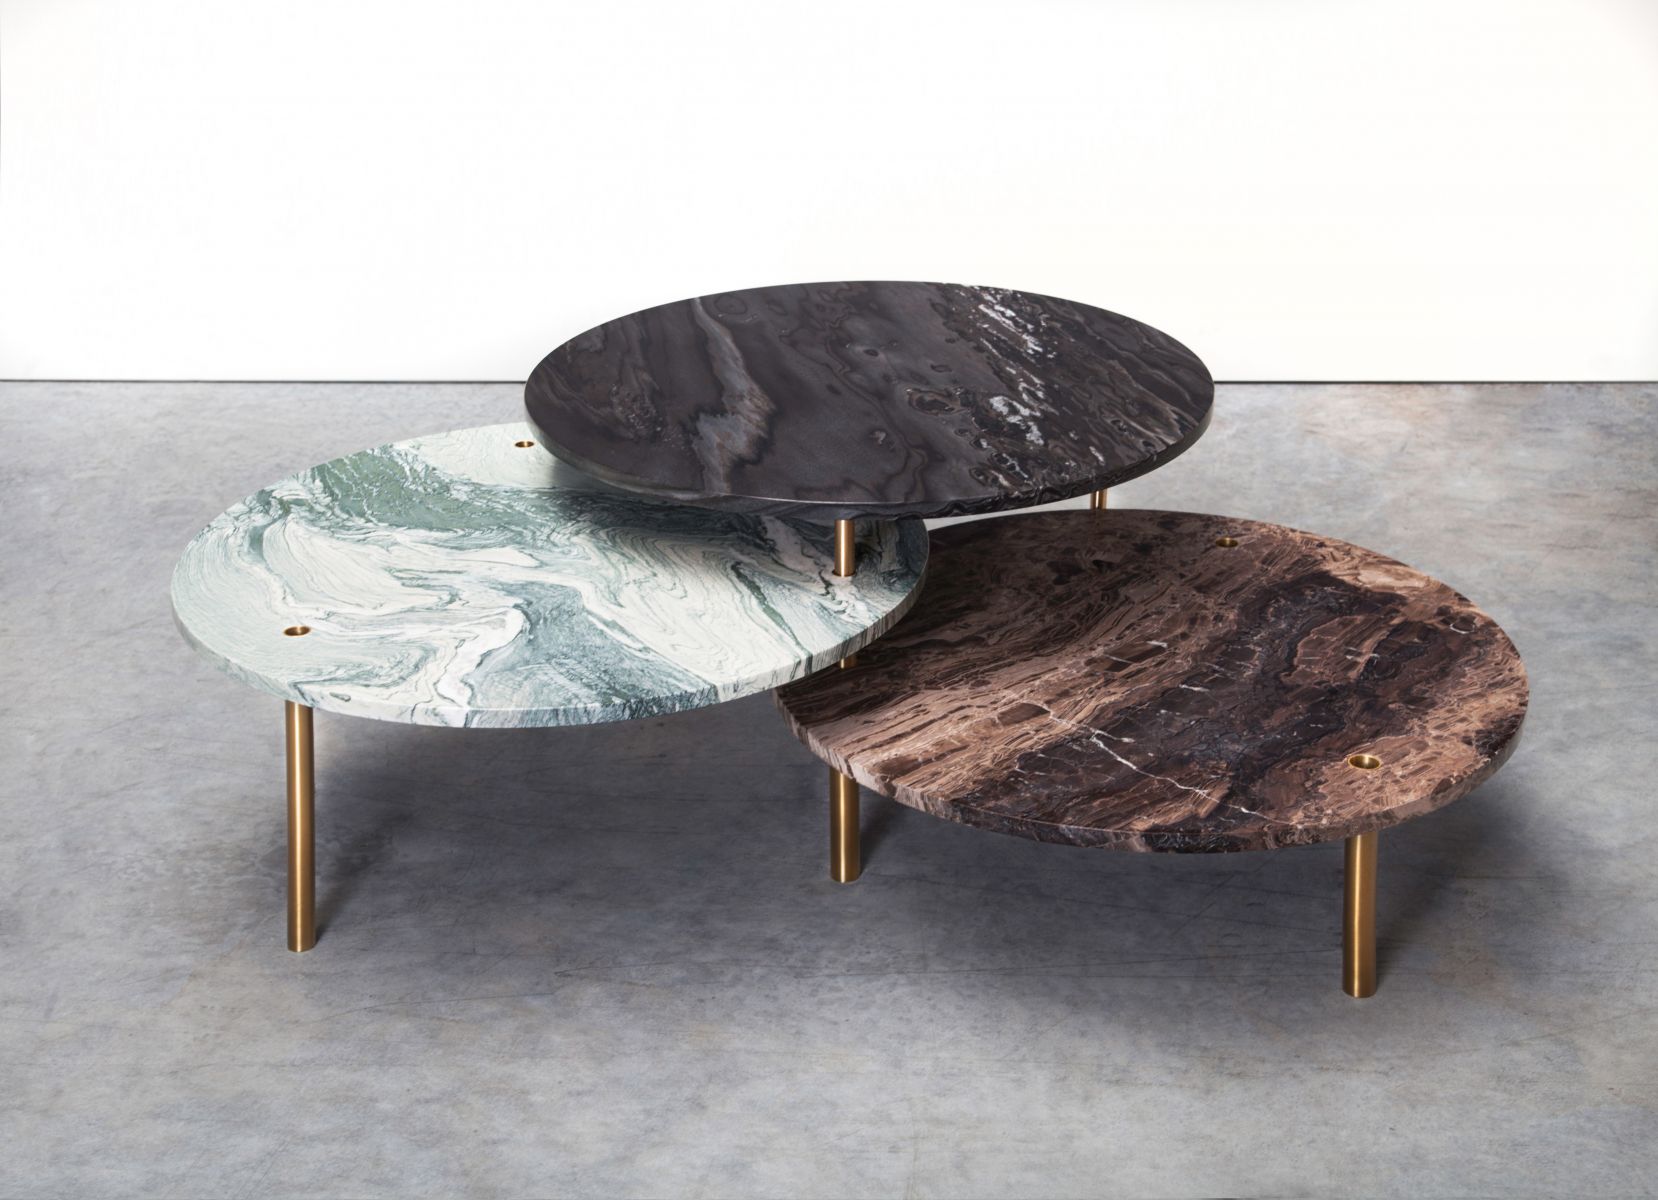 Low table 'Tectonic' Maarten De Ceulaer pic-1